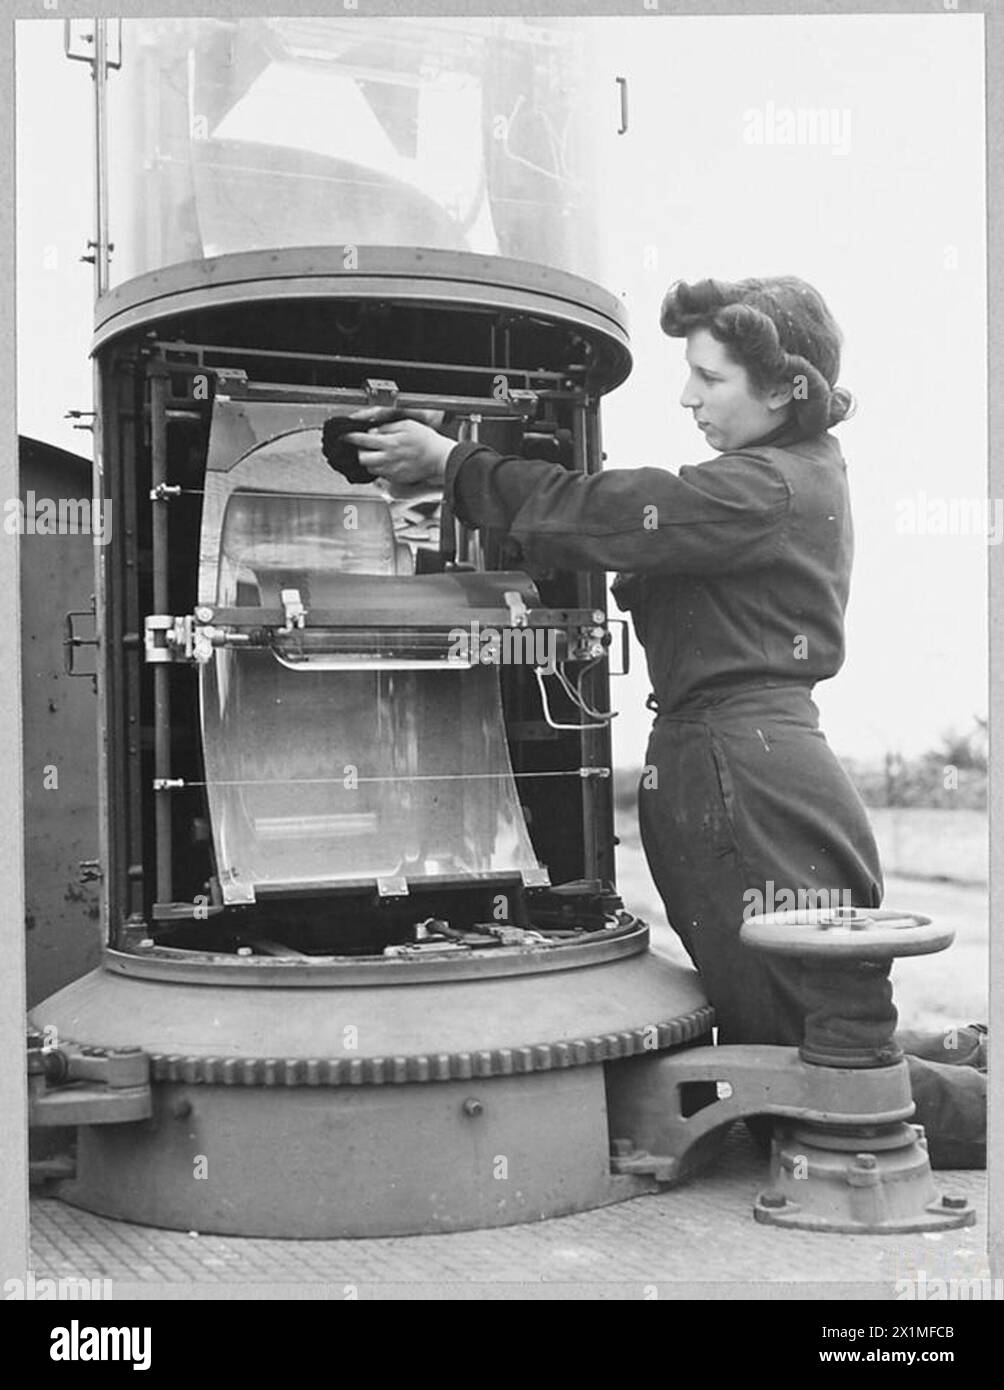 W.A.A.F. A.F. CUSTODE DEL FARO - Airfractwoman Eileen Webb del 47 Monins Road, dover, è una delle tante ragazze W.A.A.F. il cui compito è la manutenzione dei fari aerei che fanno parte dell'equipaggiamento di volo notturno delle stazioni di bombardamento R.A.F. Venti anni, Aircraftwoman Webb era un impiegato in un ufficio di disegnatore prima di diventare un elettricista della W.A.A.F. Foto (pubblicata nel 1944) mostra - Aircraftwoman Eileen Webb al lavoro sulla sua casa faro, la Royal Air Force Foto Stock